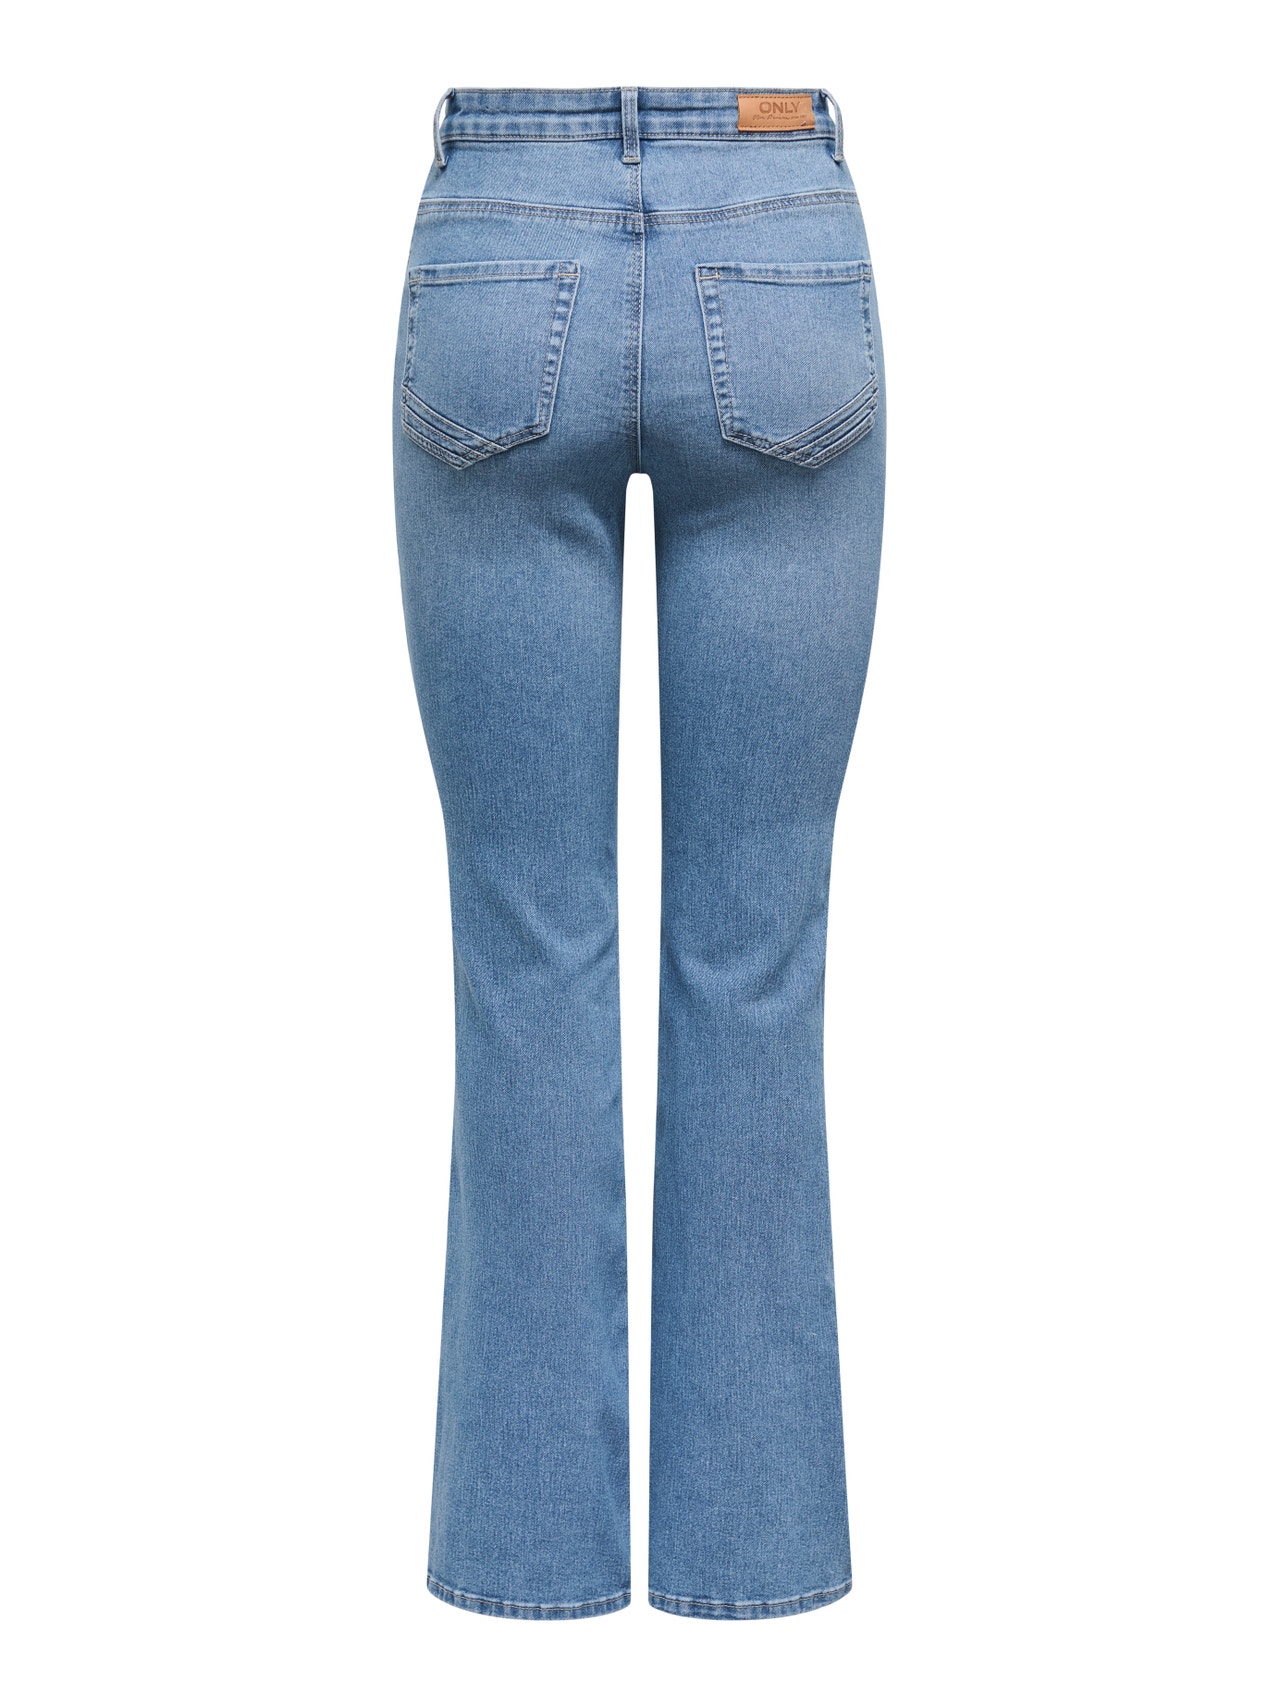 ONLY ONLSandra High Waist Flared Jeans -Medium Blue Denim - 15332915